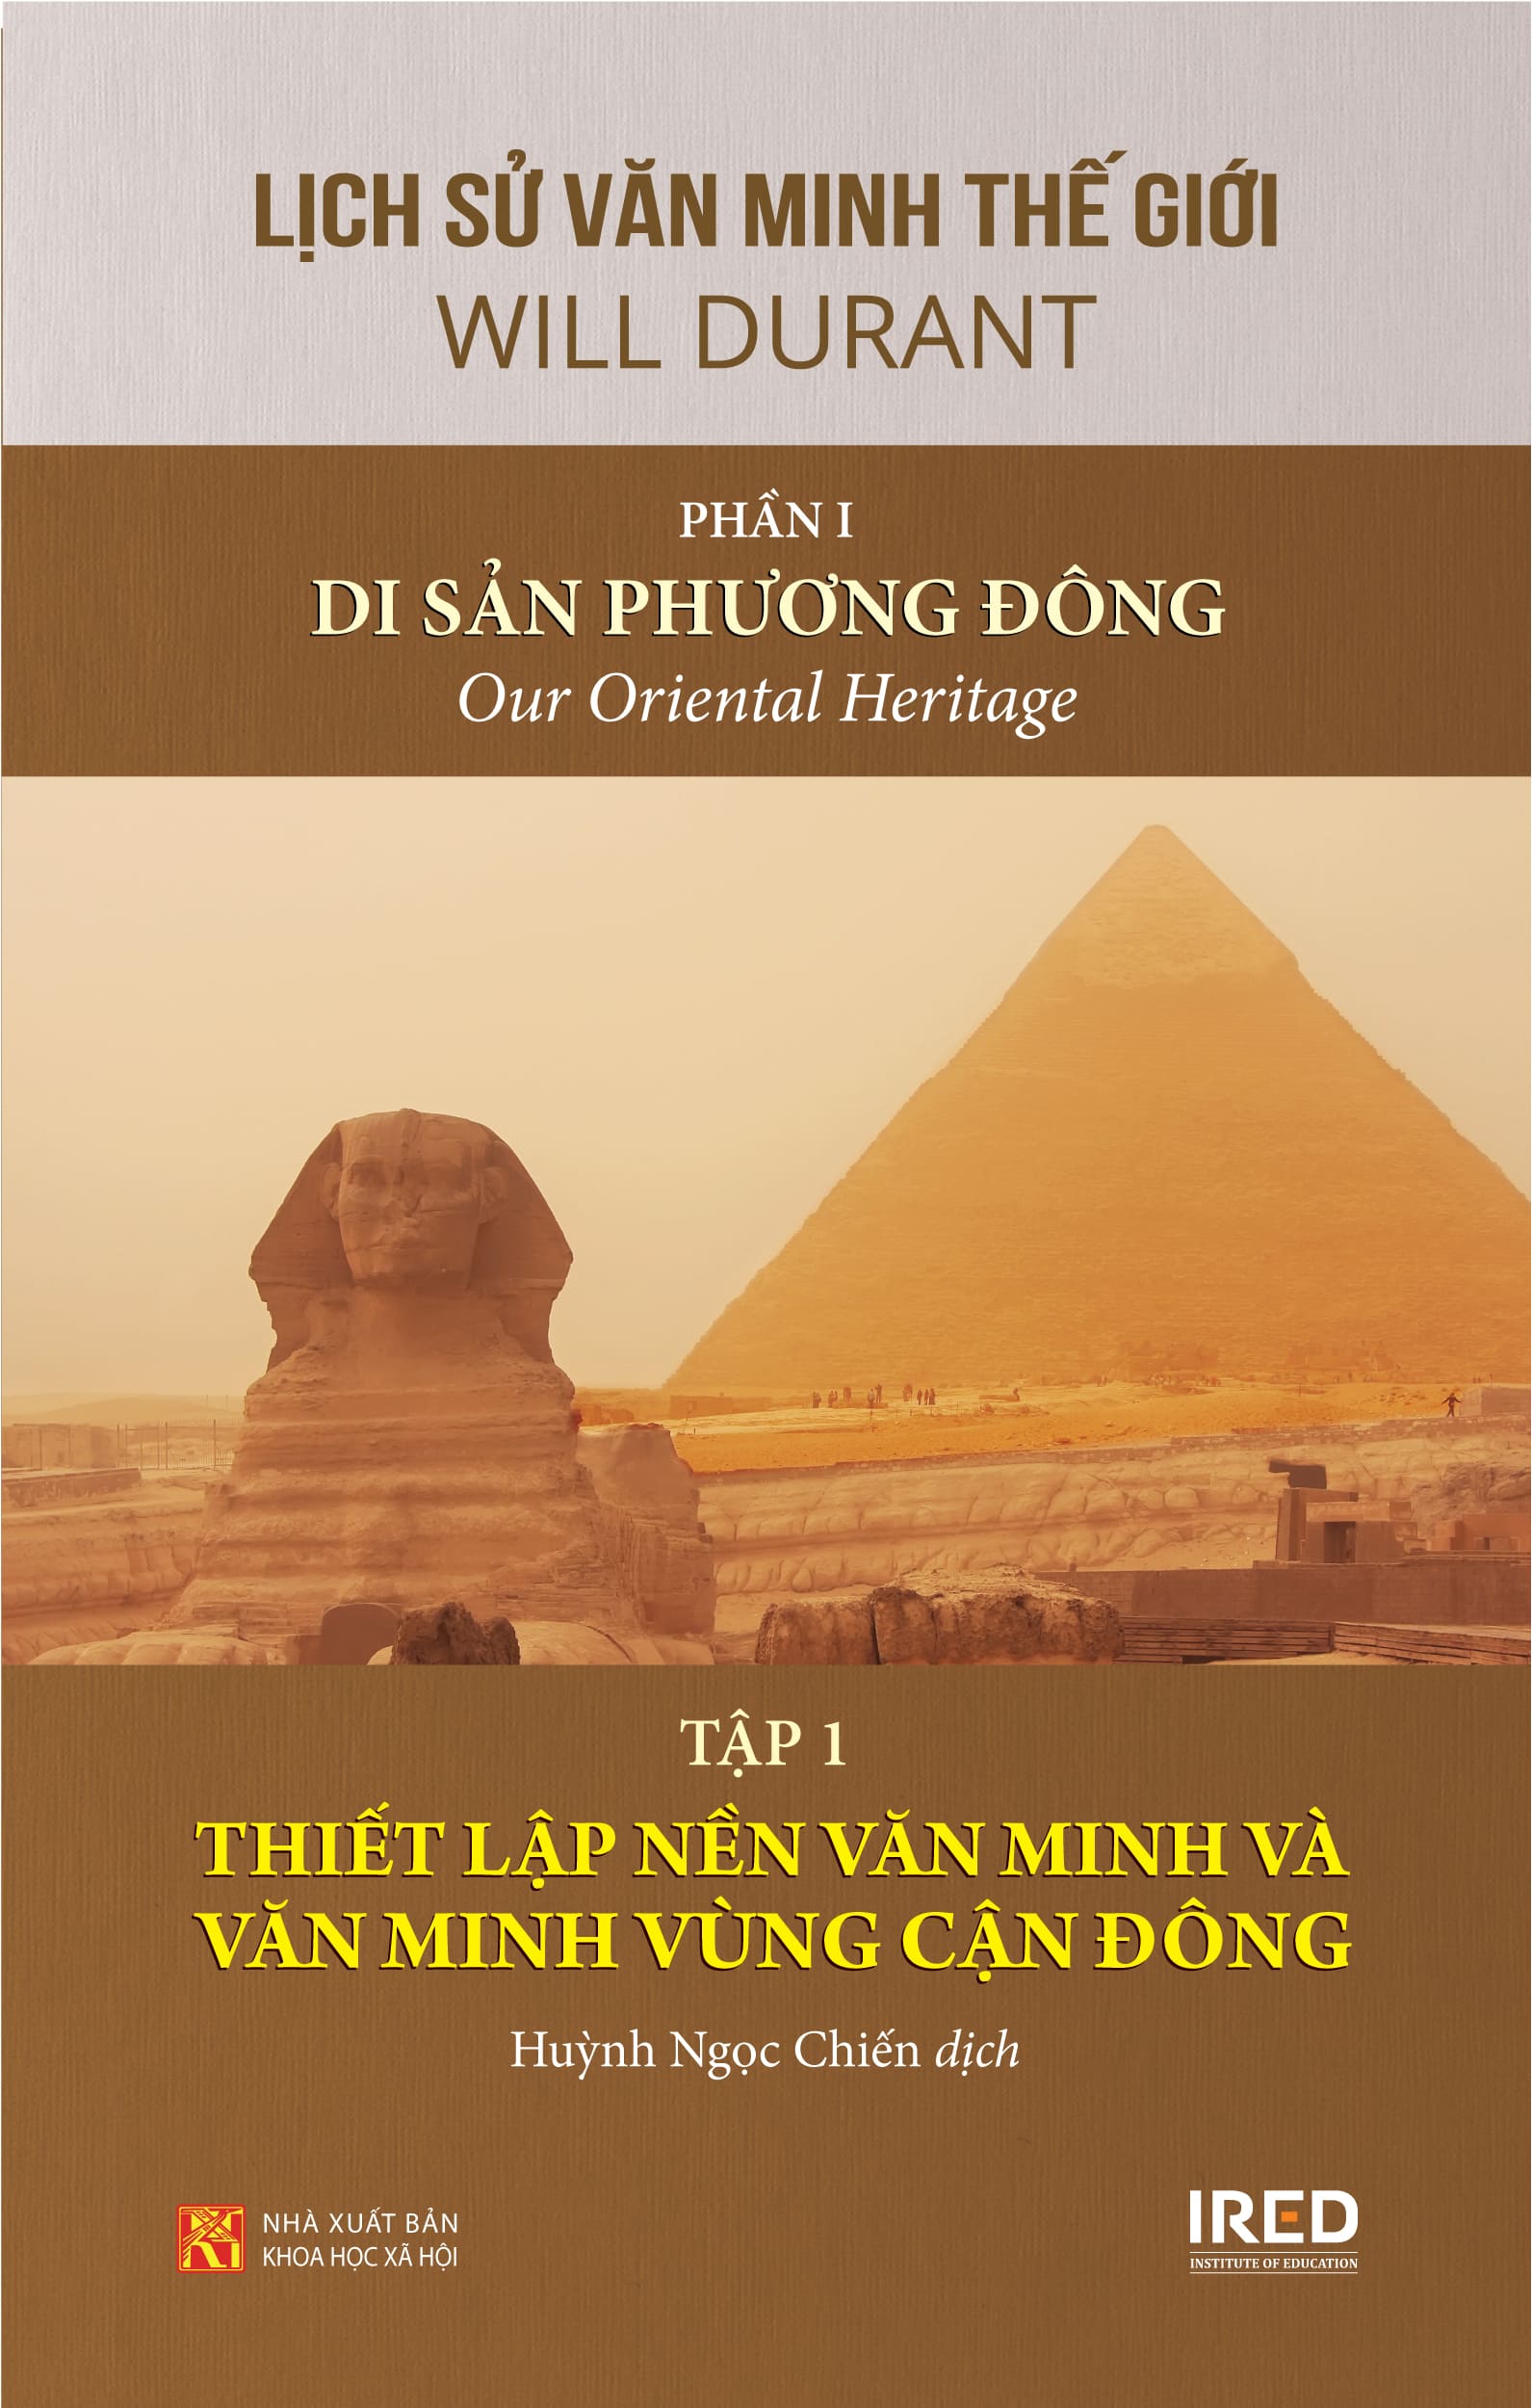 Lịch Sử Văn Minh Thế Giới Phần 1: Di Sản Phương Đông - Will Durant (trọn bộ 3 tập) - Sách IRED Books